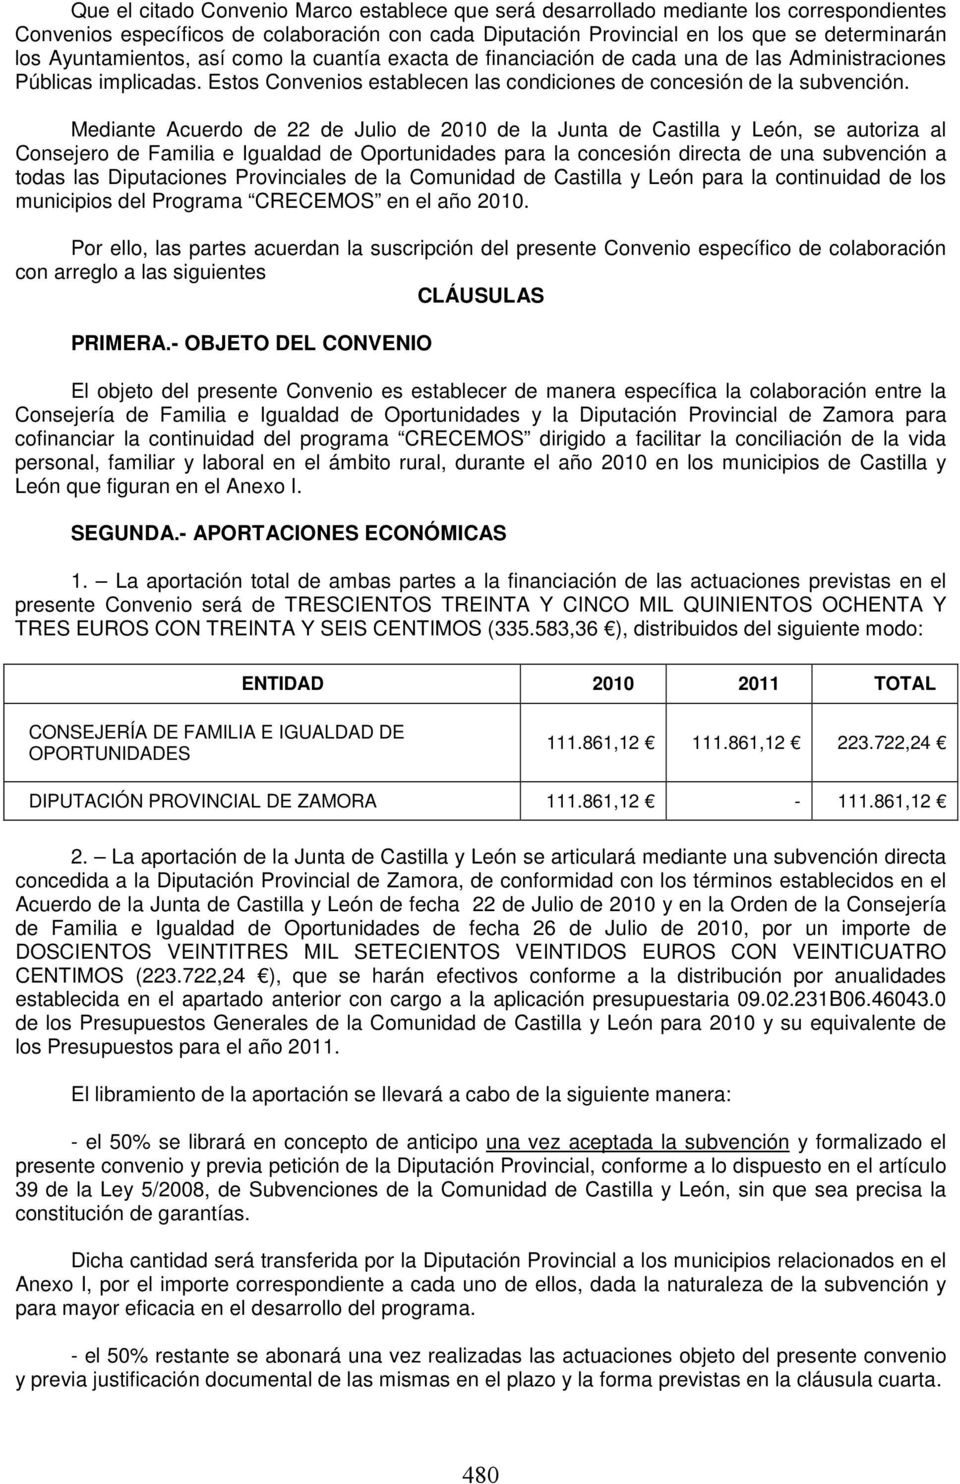 Mediante Acuerdo de 22 de Julio de 2010 de la Junta de Castilla y León, se autoriza al Consejero de Familia e Igualdad de Oportunidades para la concesión directa de una subvención a todas las